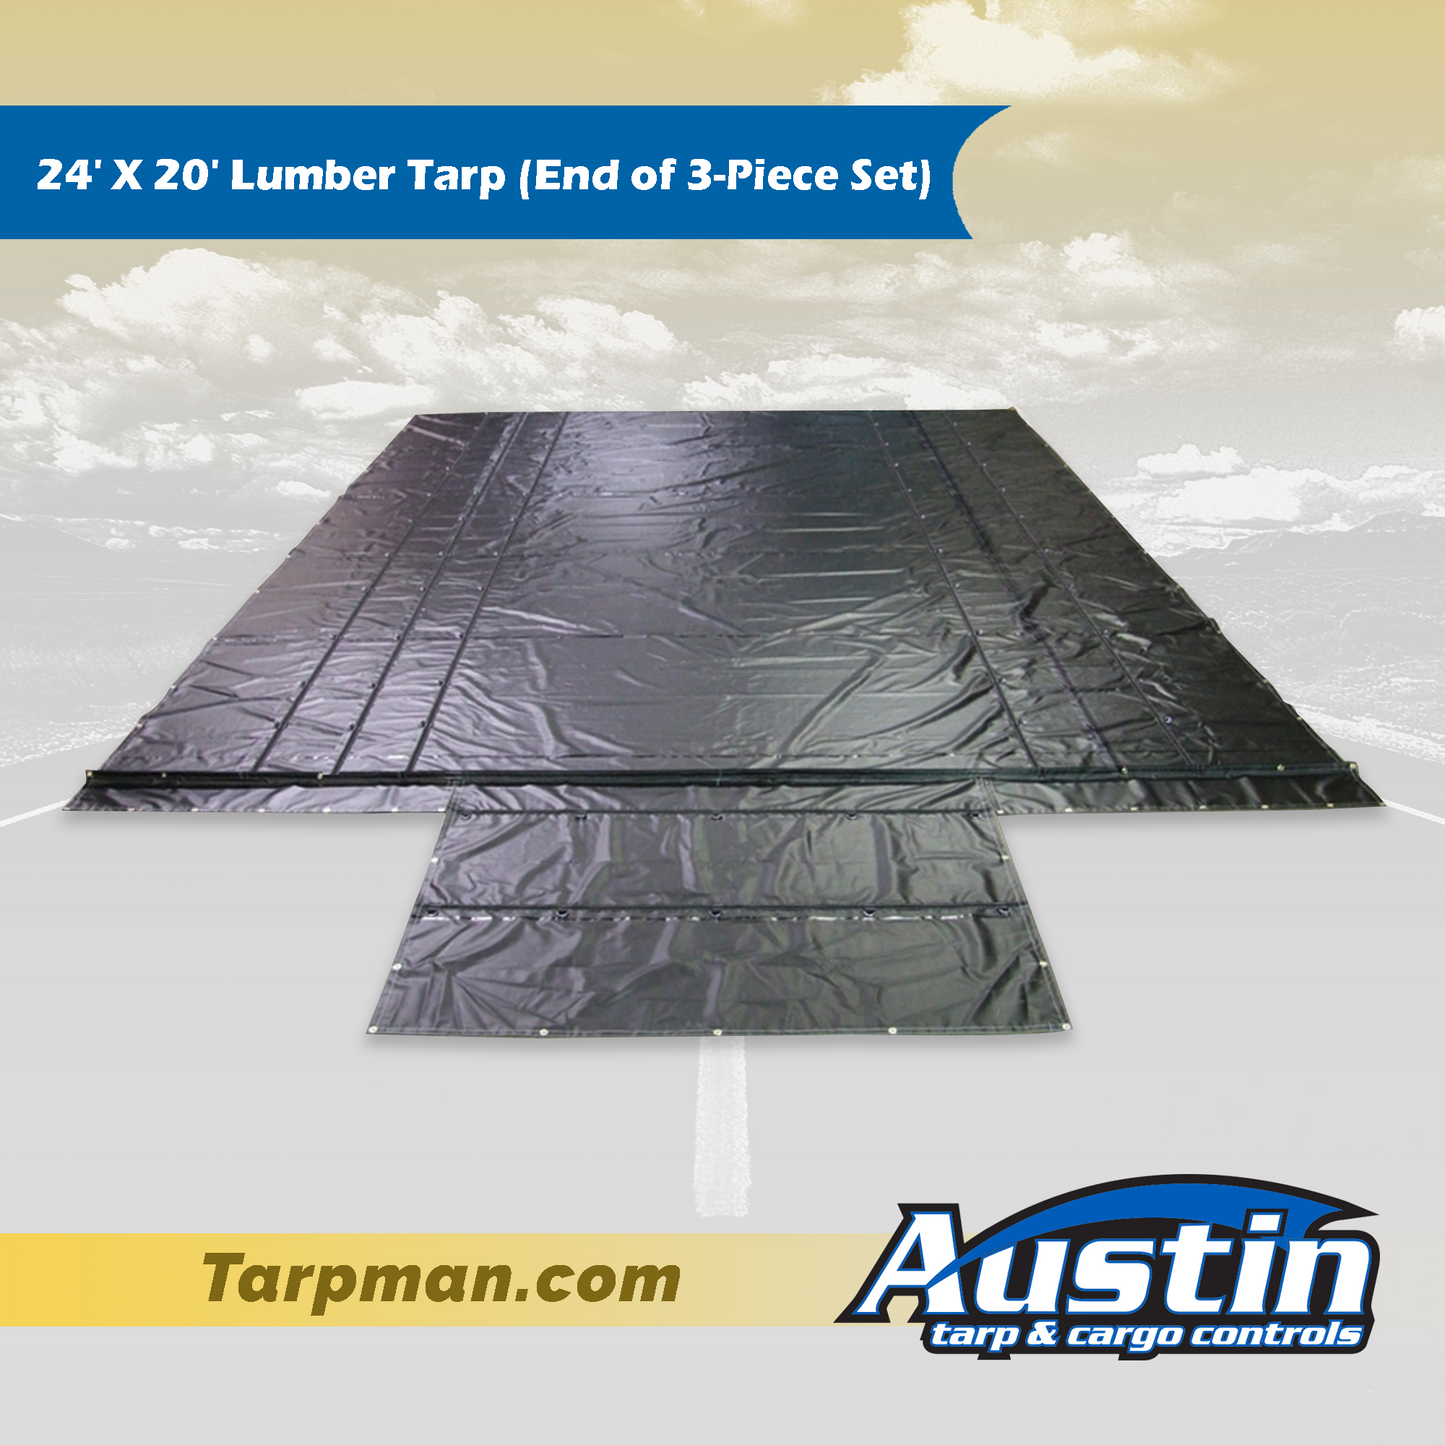 24' X 20' Lumber Tarp (End of 3-Piece Set) Tarpman.com | Austin Tarp & Cargo Controls